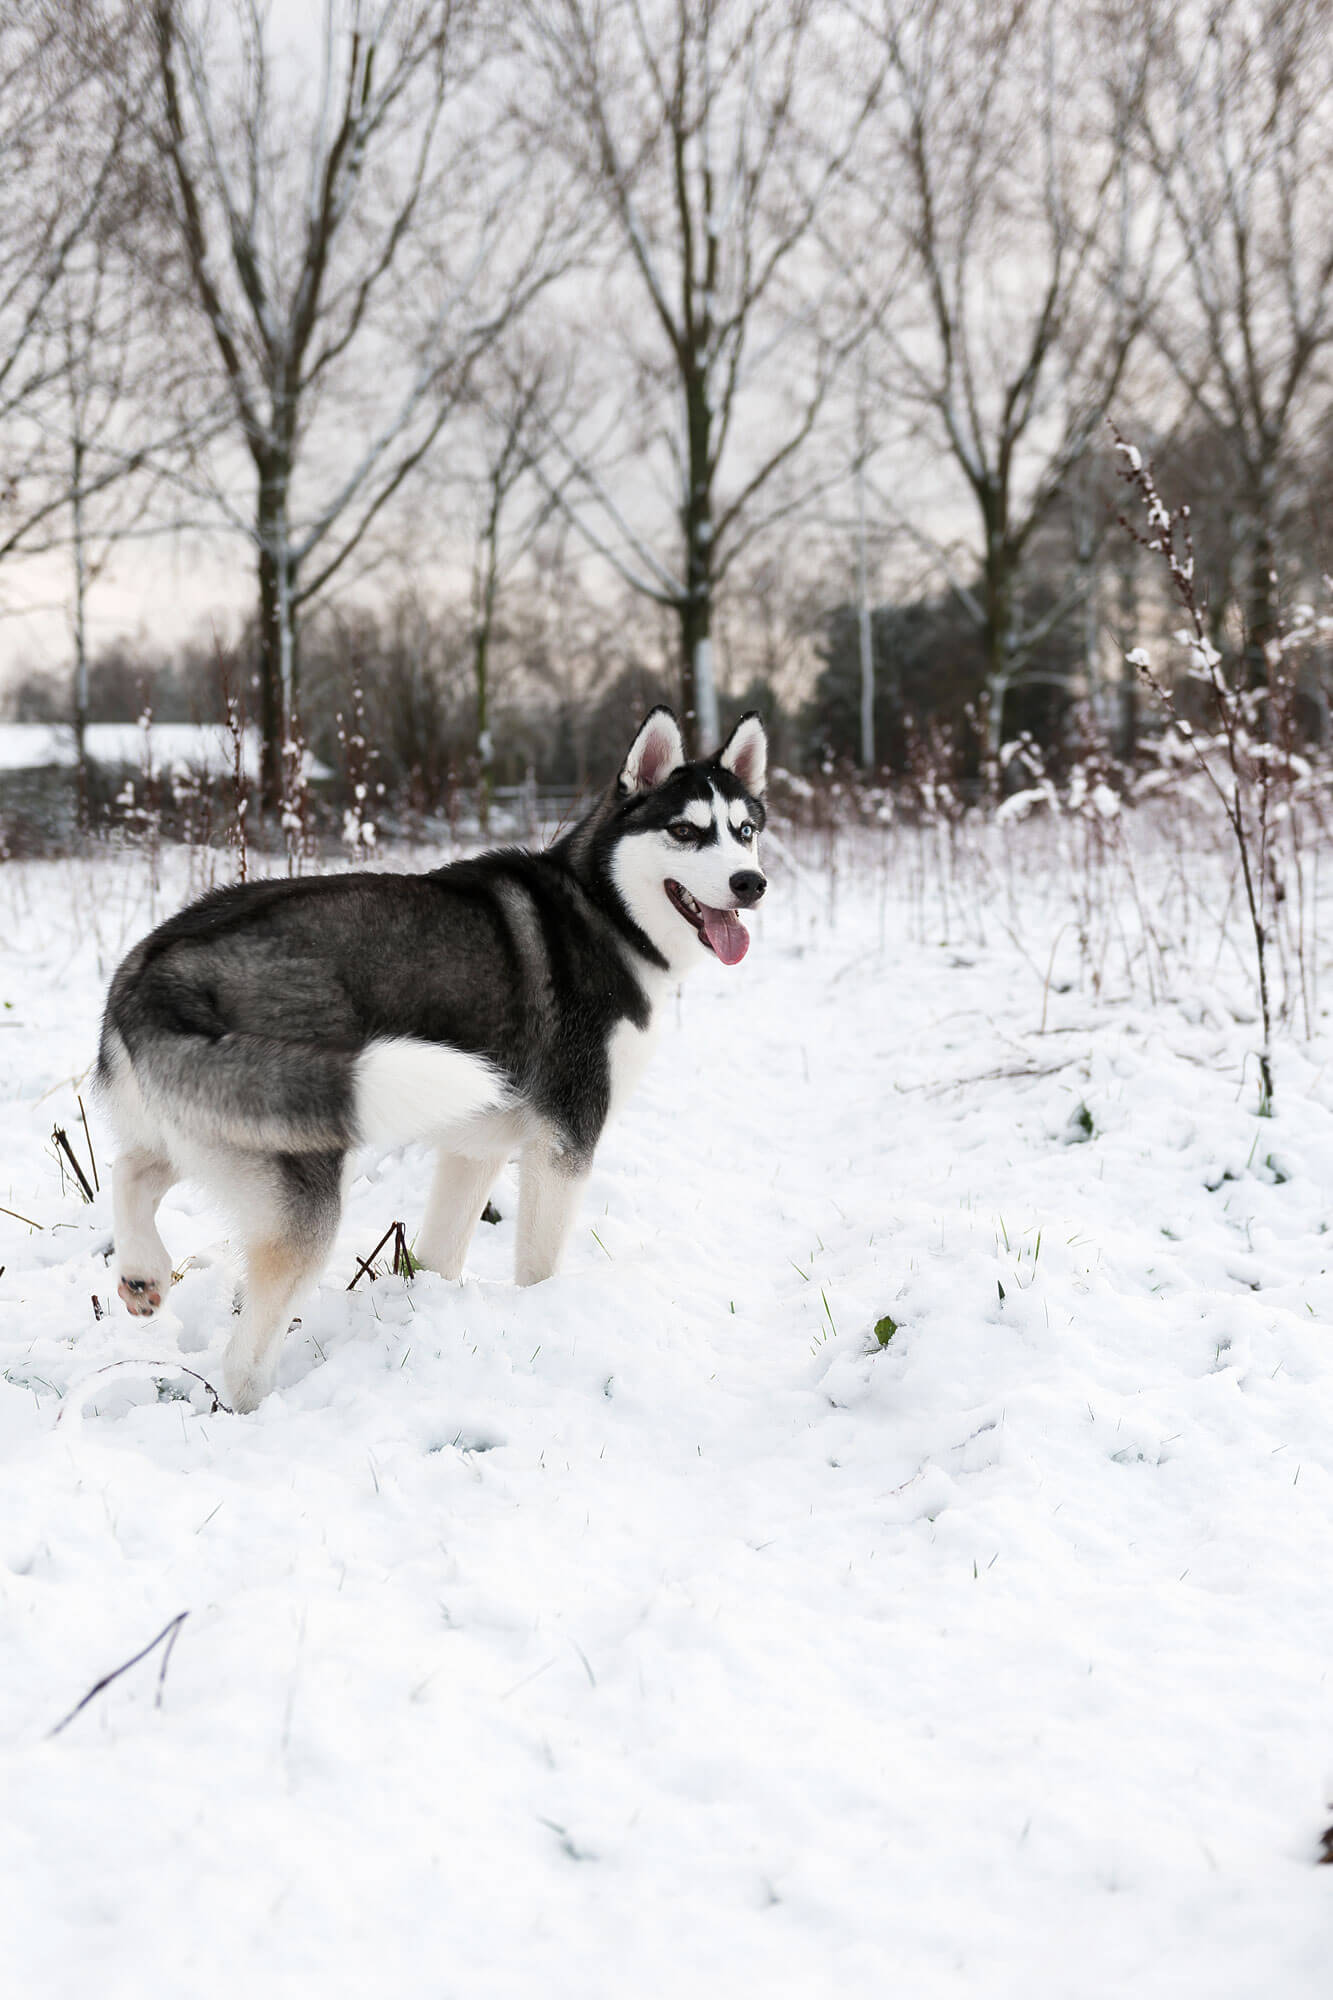 Igor de husky in de sneeuw